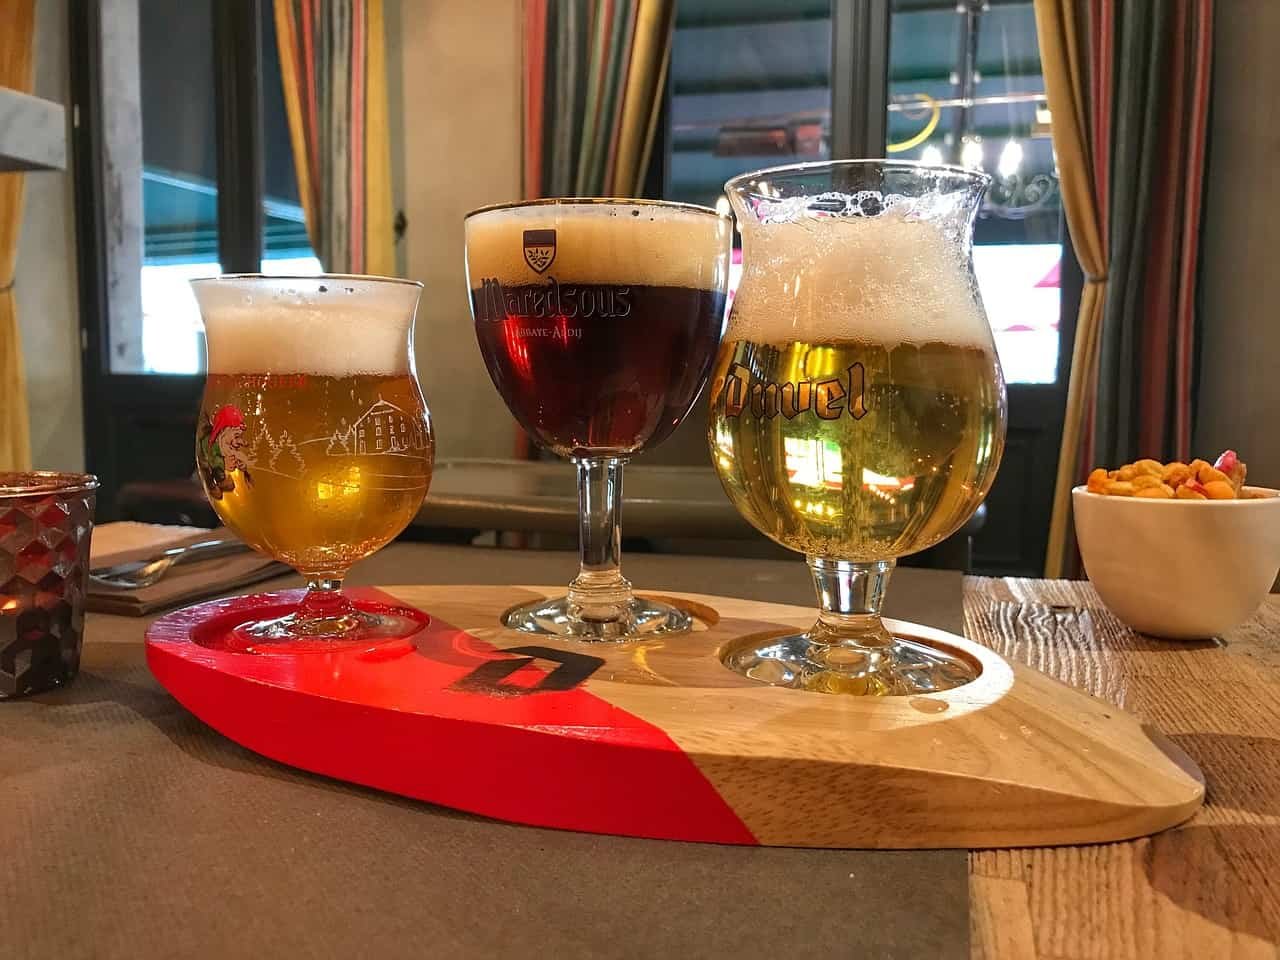 Chouffe, Maredsous et Duvel, trois verres de bière belge côte à côte sur une planche de bois.